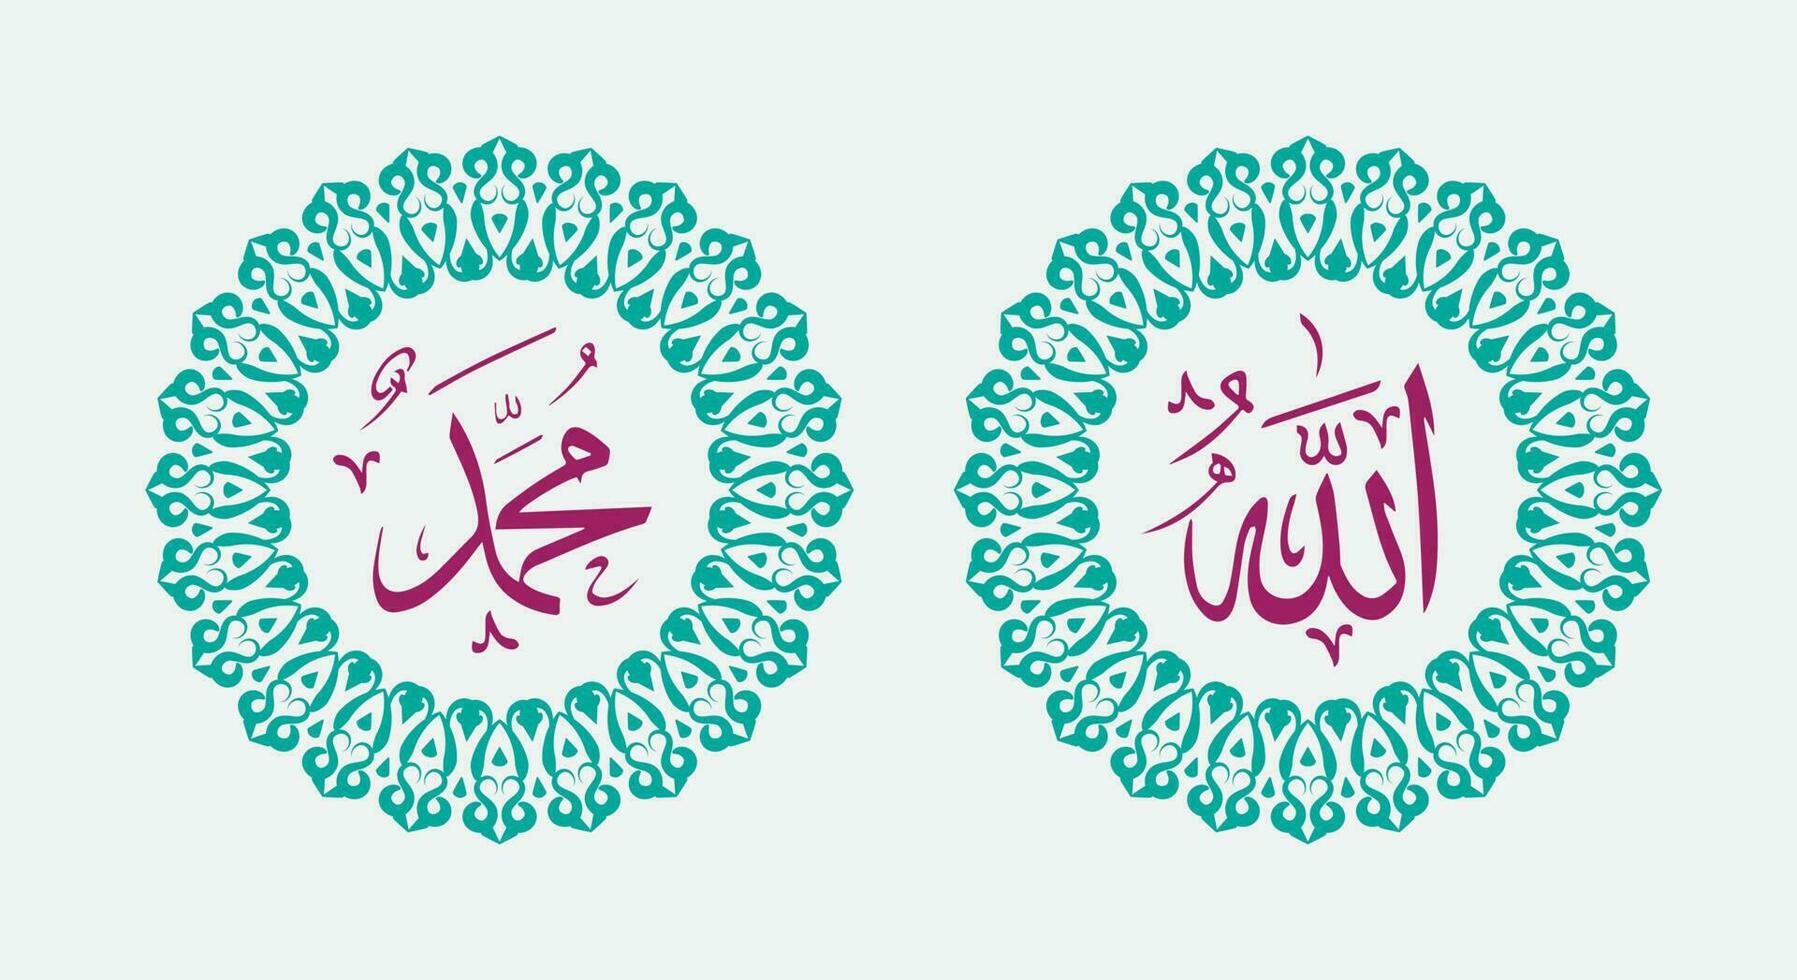 Allah Muhammad Name von Allah Mohammed, Allah Muhammad Arabisch islamisch Kalligraphie Kunst, mit traditionell Rahmen und elegant Farbe vektor